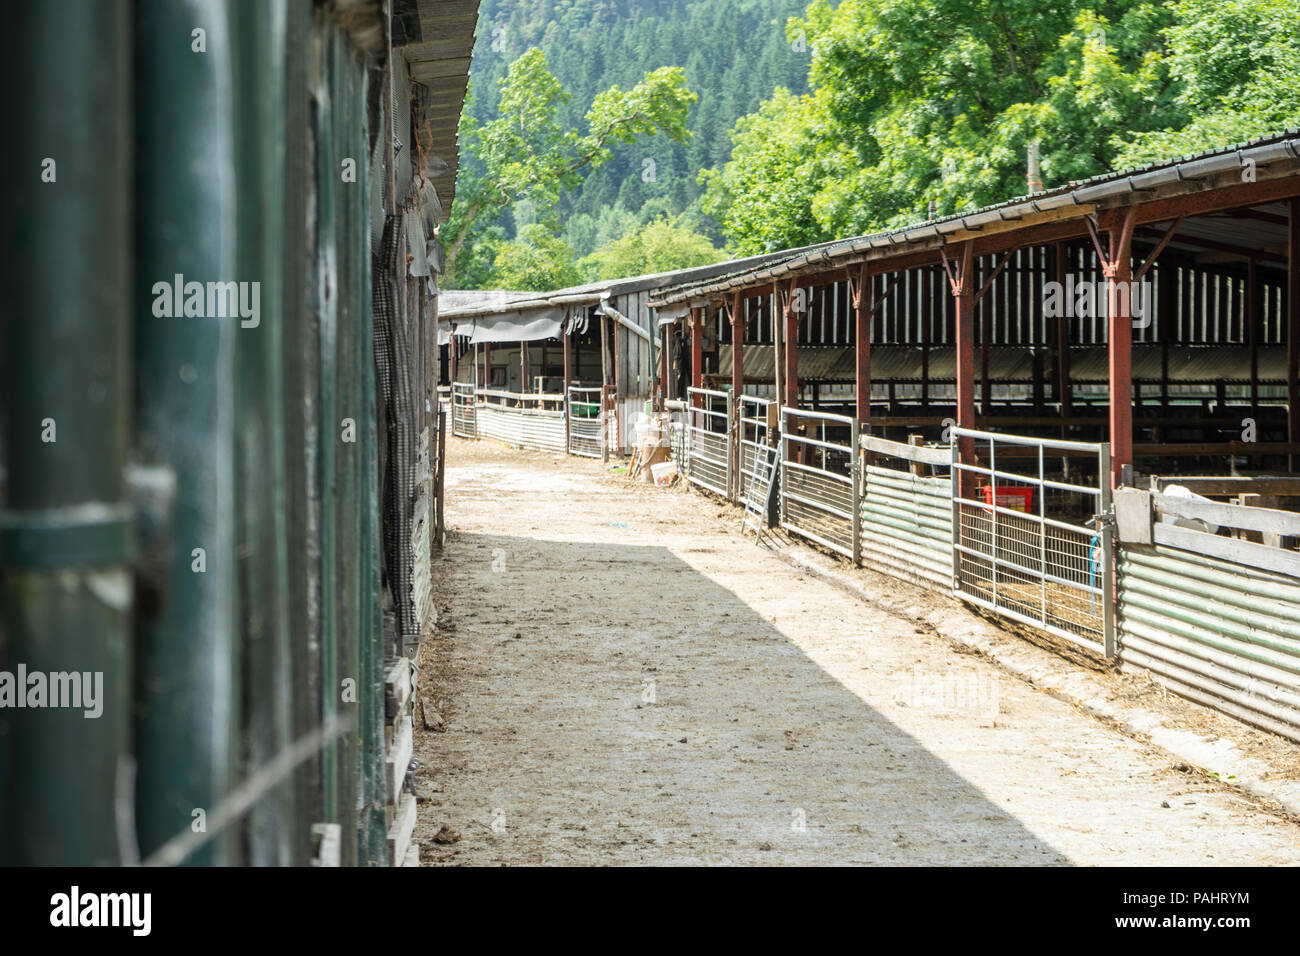 Farm Yard shot con abrir el ganado ovino / galpones / caballerizas, con vallas y la ruta Foto de stock